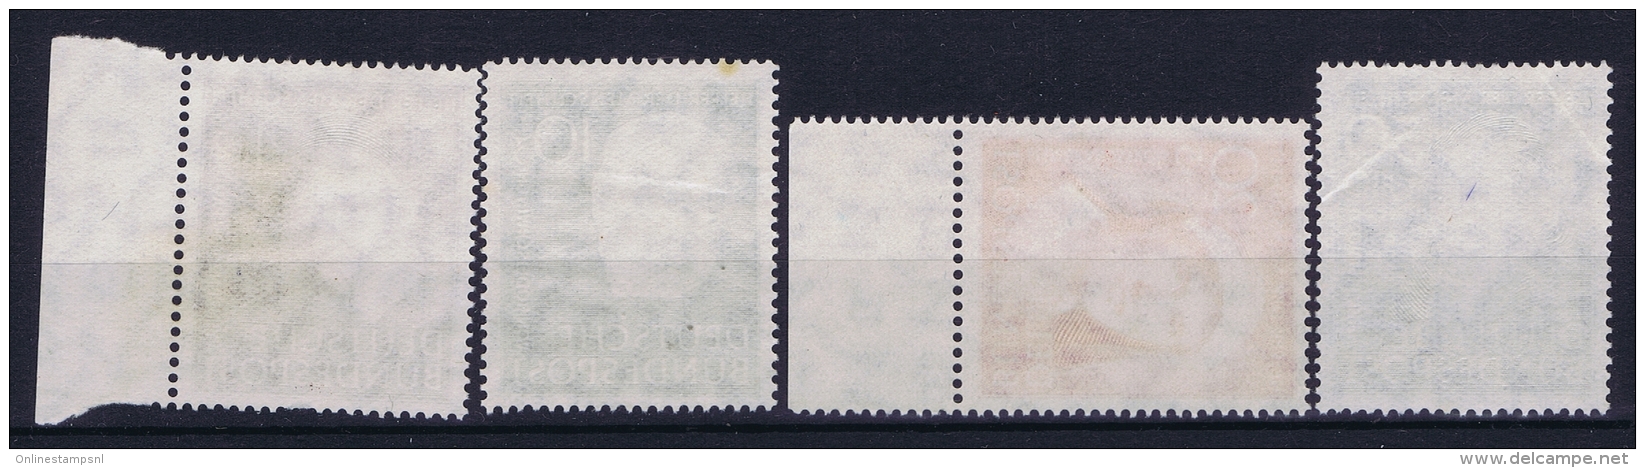 Bundespost: Mi Nr 143 - 146 Not Used (*) SG 1951 - Ungebraucht